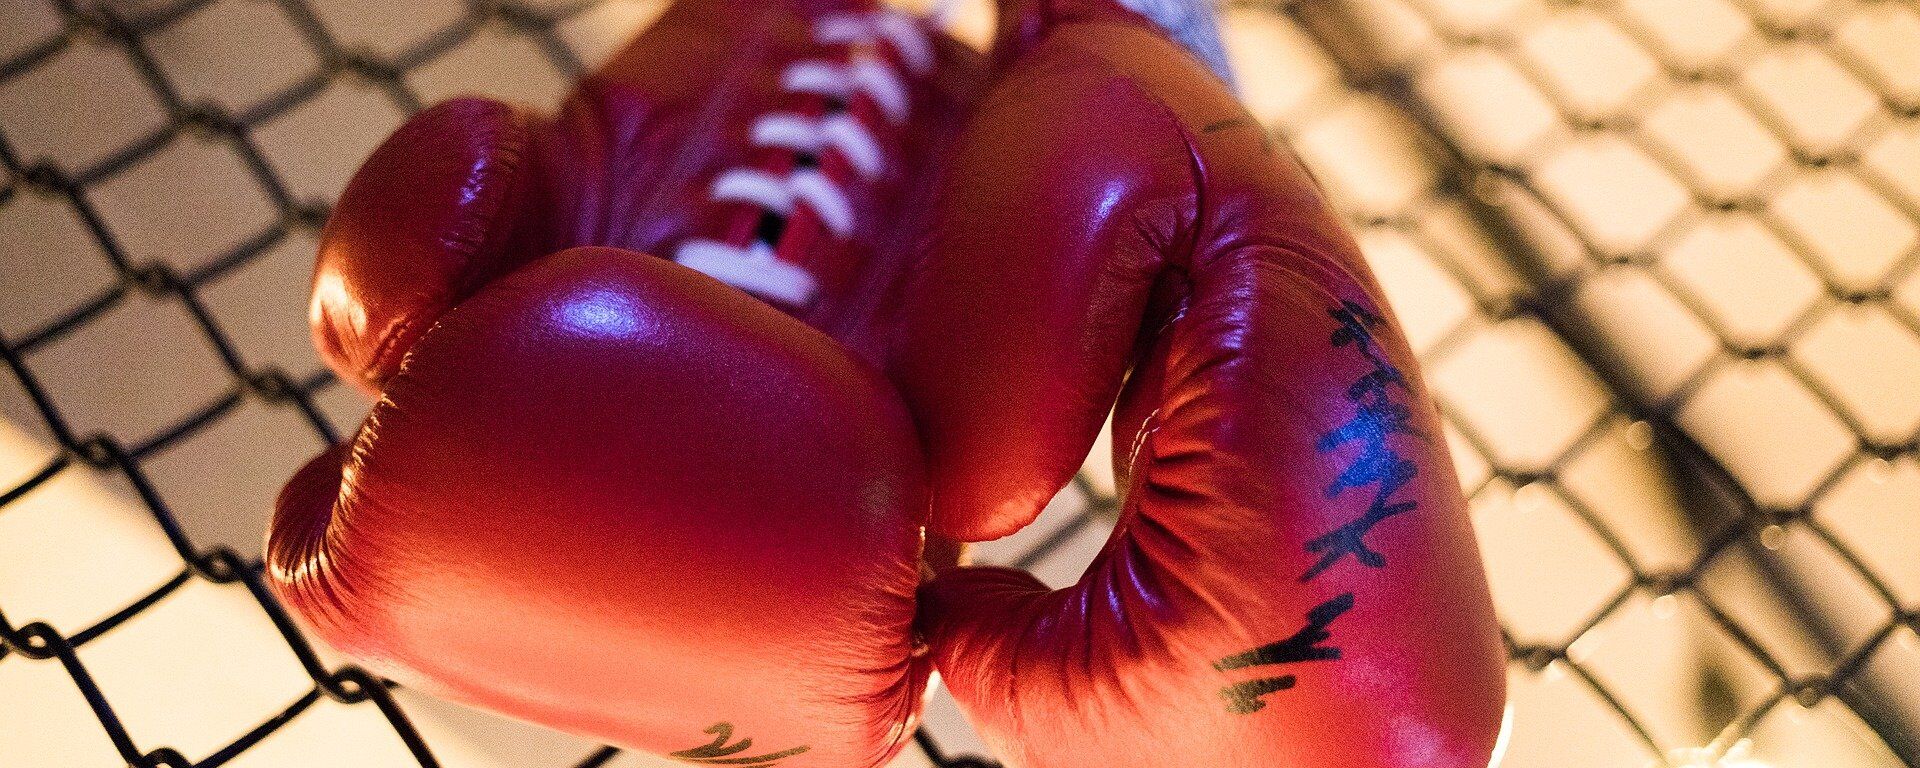 Боксерские перчатки, архивное фото - Sputnik Ўзбекистон, 1920, 28.06.2021